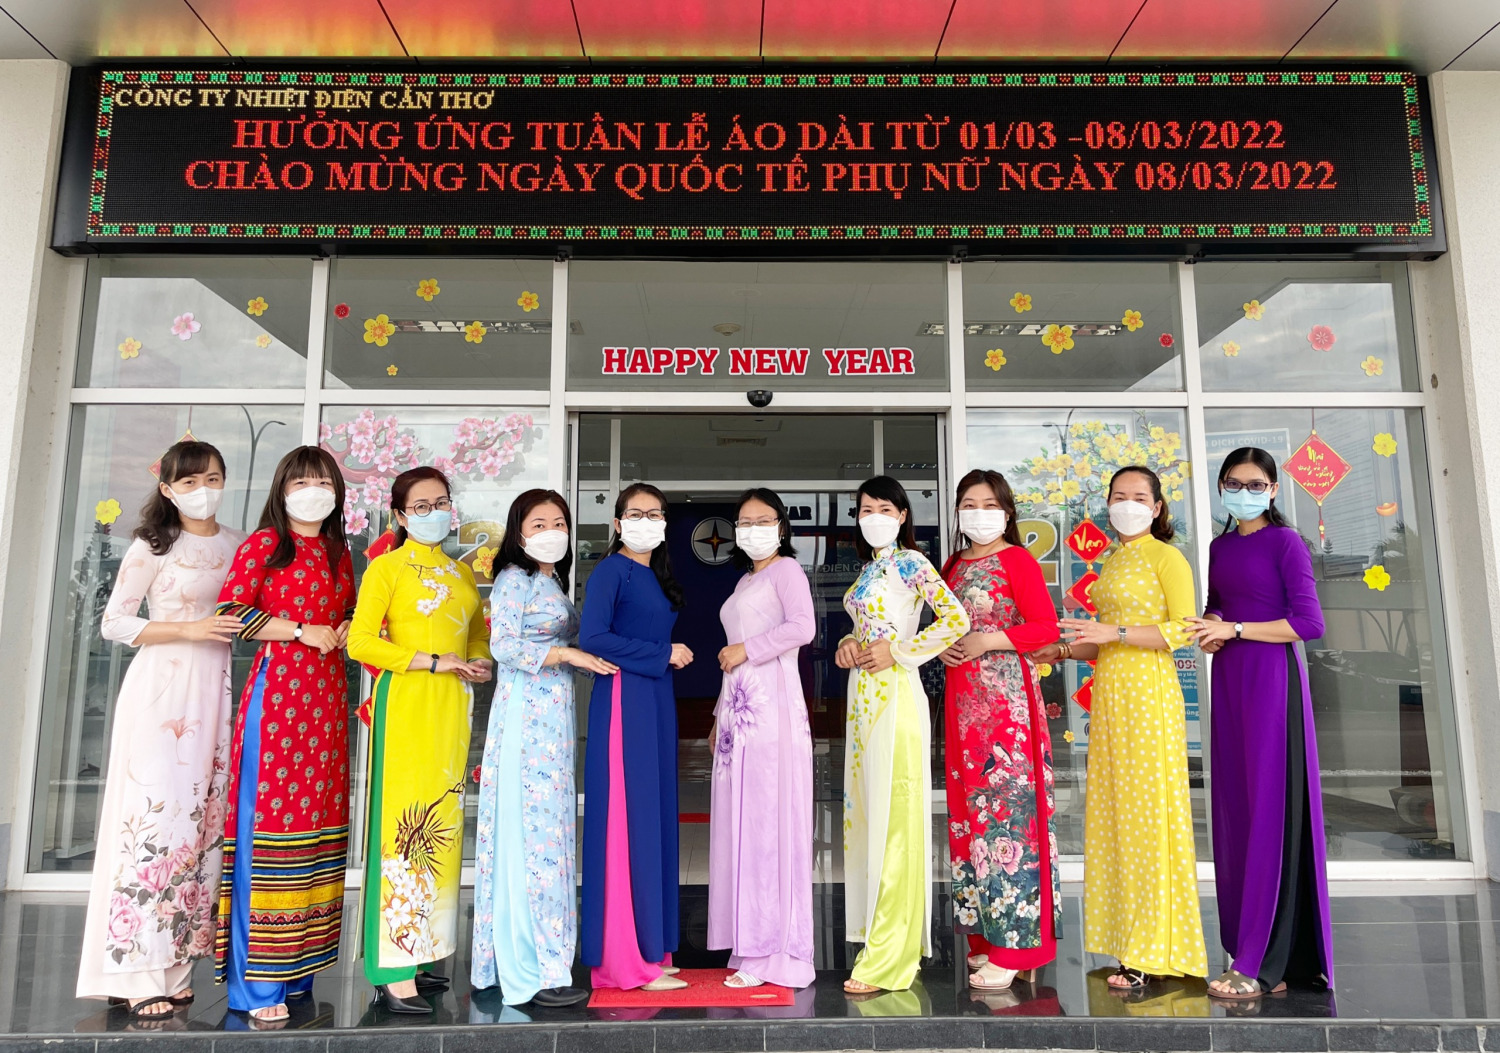 Công ty Nhiệt điện Cần Thơ tham gia hưởng ứng sự kiện “Tuần lễ Áo dài - Di sản Văn hóa Việt Nam” do Trung ương Hội Phụ nữ Việt Nam tổ chức.